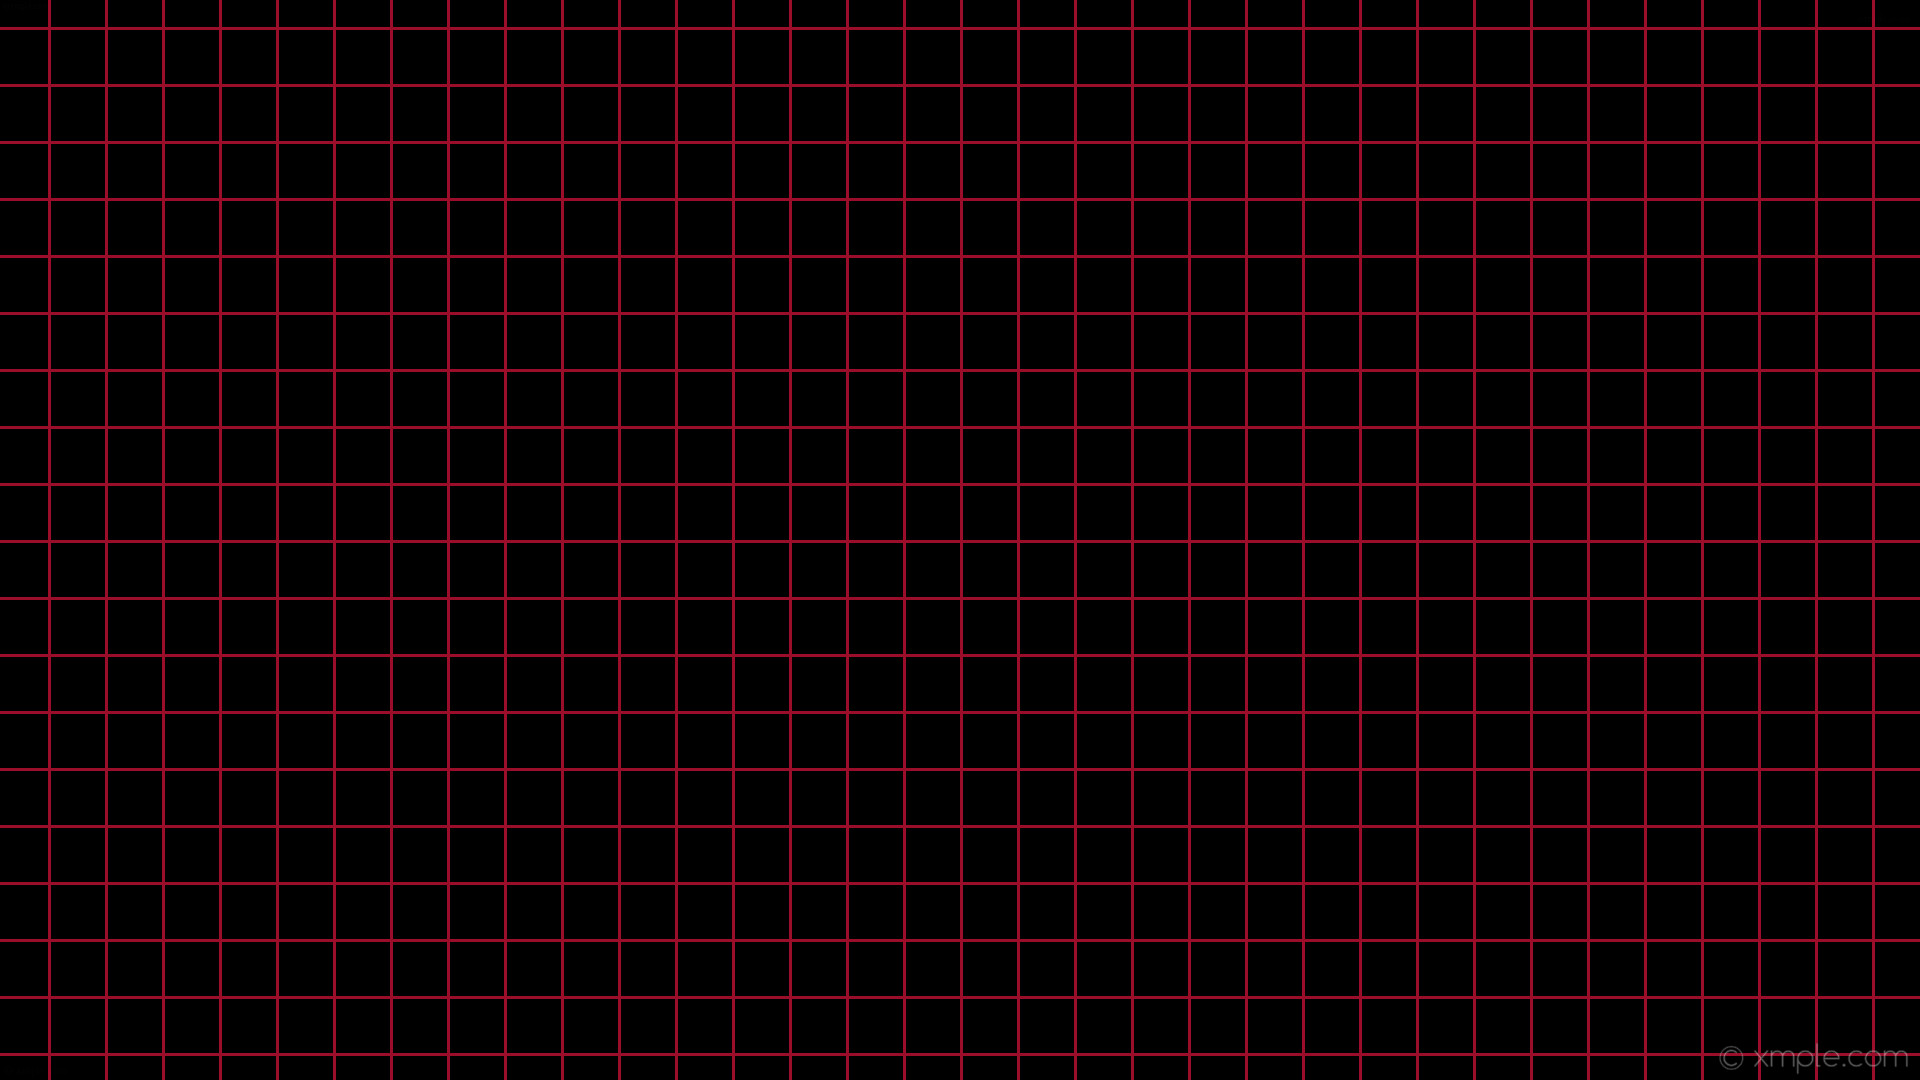 1920x1080 wallpaper graph paper black red grid crimson #000000 #dc143c 0Â° 3px 57px